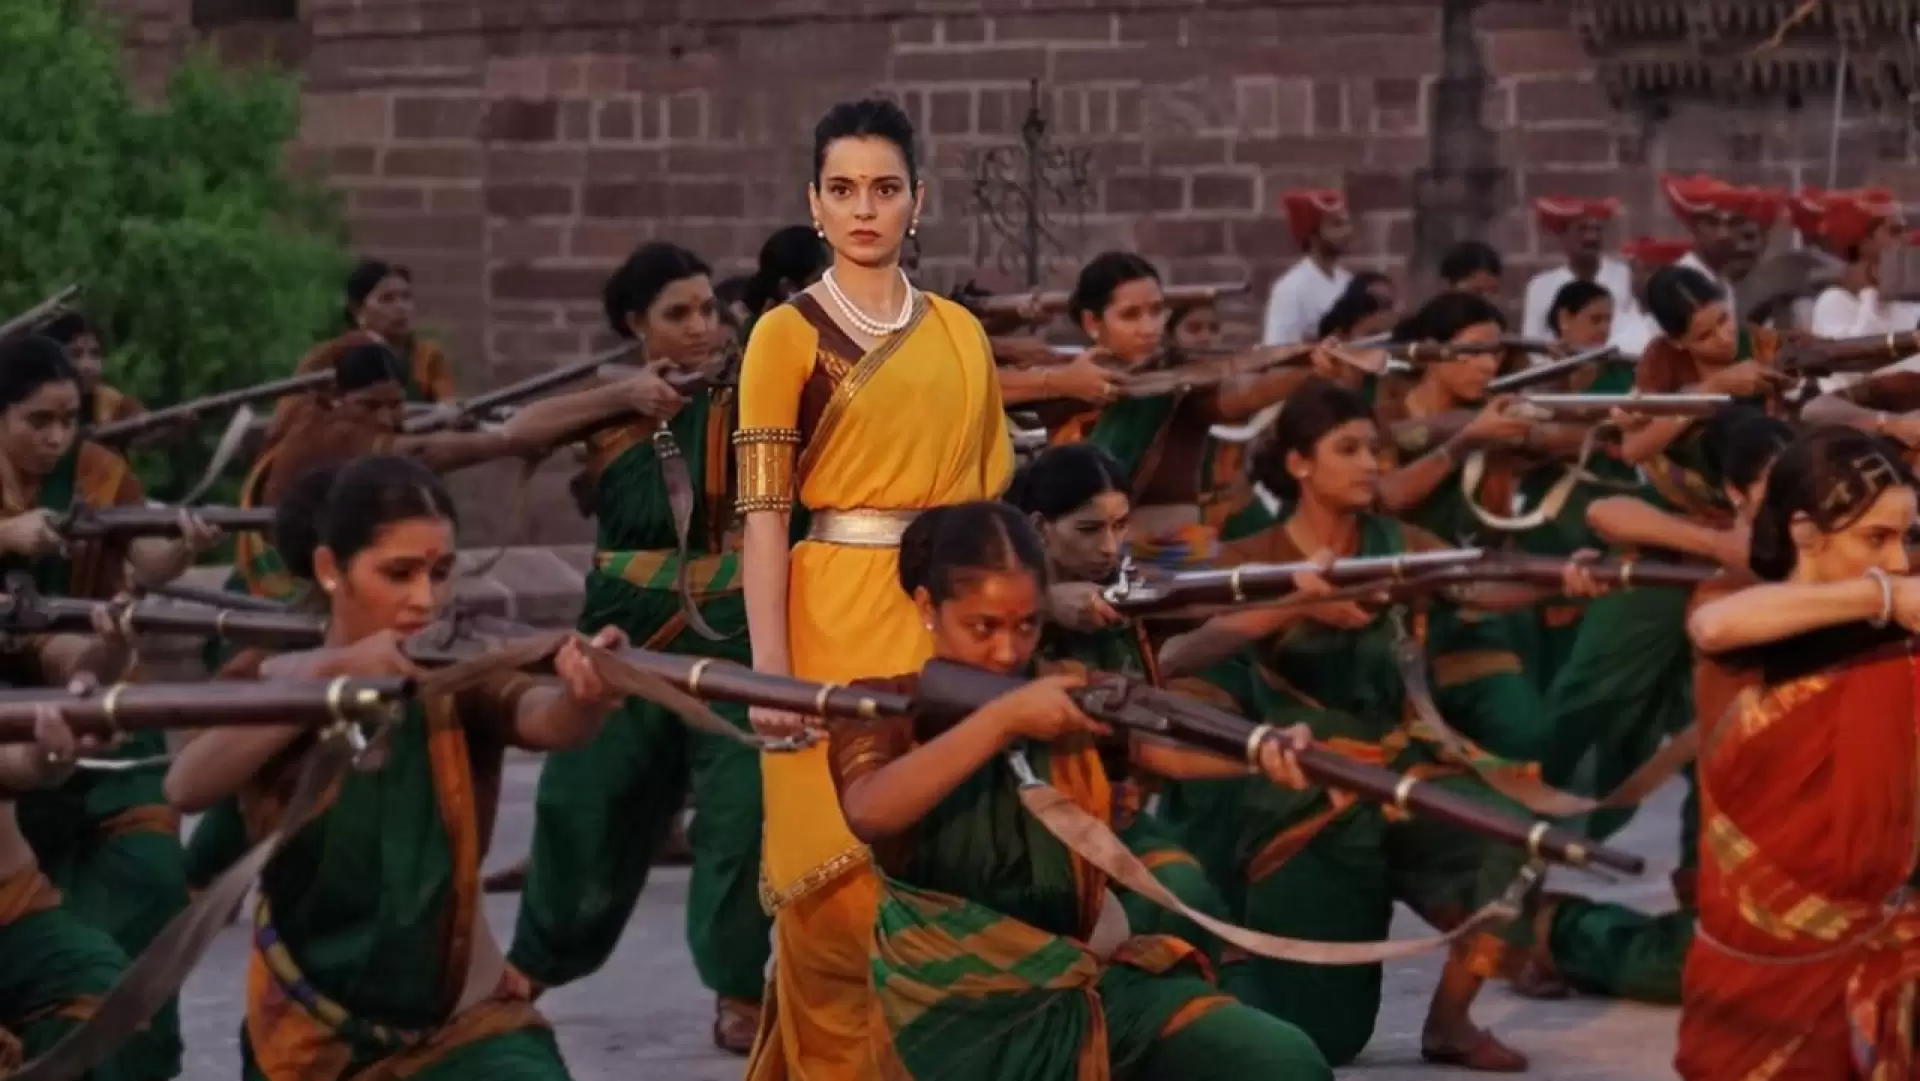 دانلود فیلم Manikarnika: The Queen of Jhansi 2019 (مانیکارنیکا ملکه جهانسی) با زیرنویس فارسی